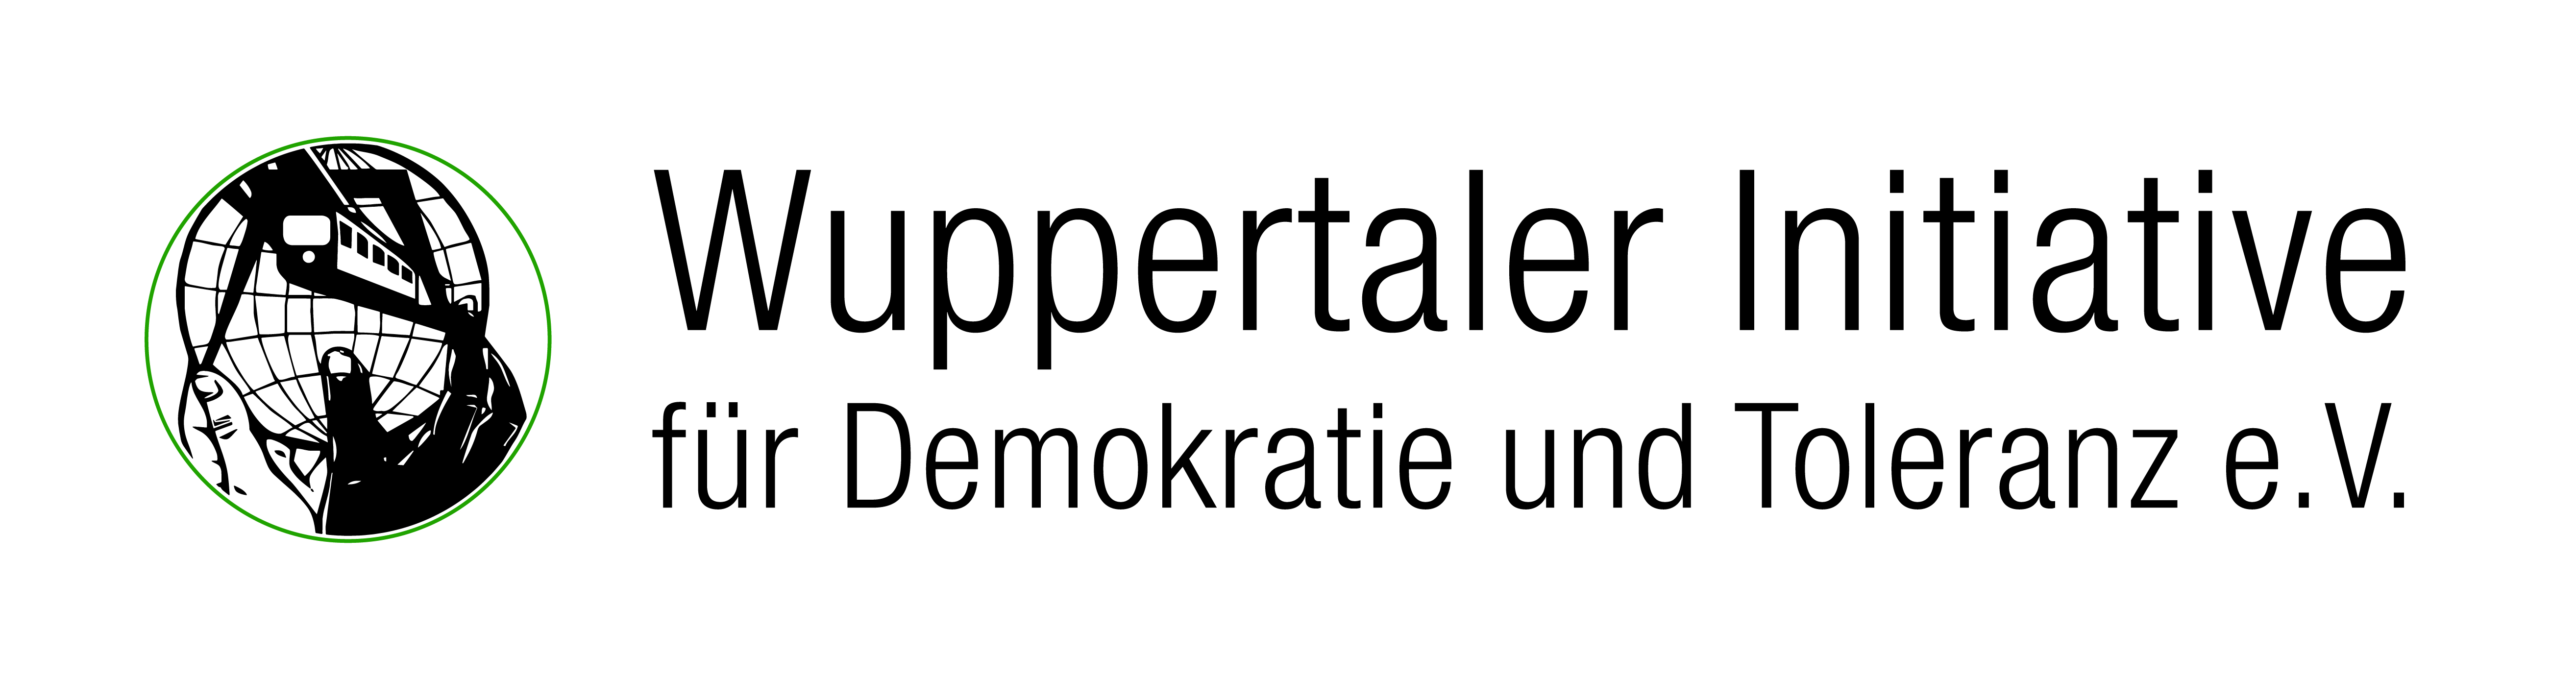 Logo: Wuppertaler Initiative für Demokratie und Toleranz e.V.